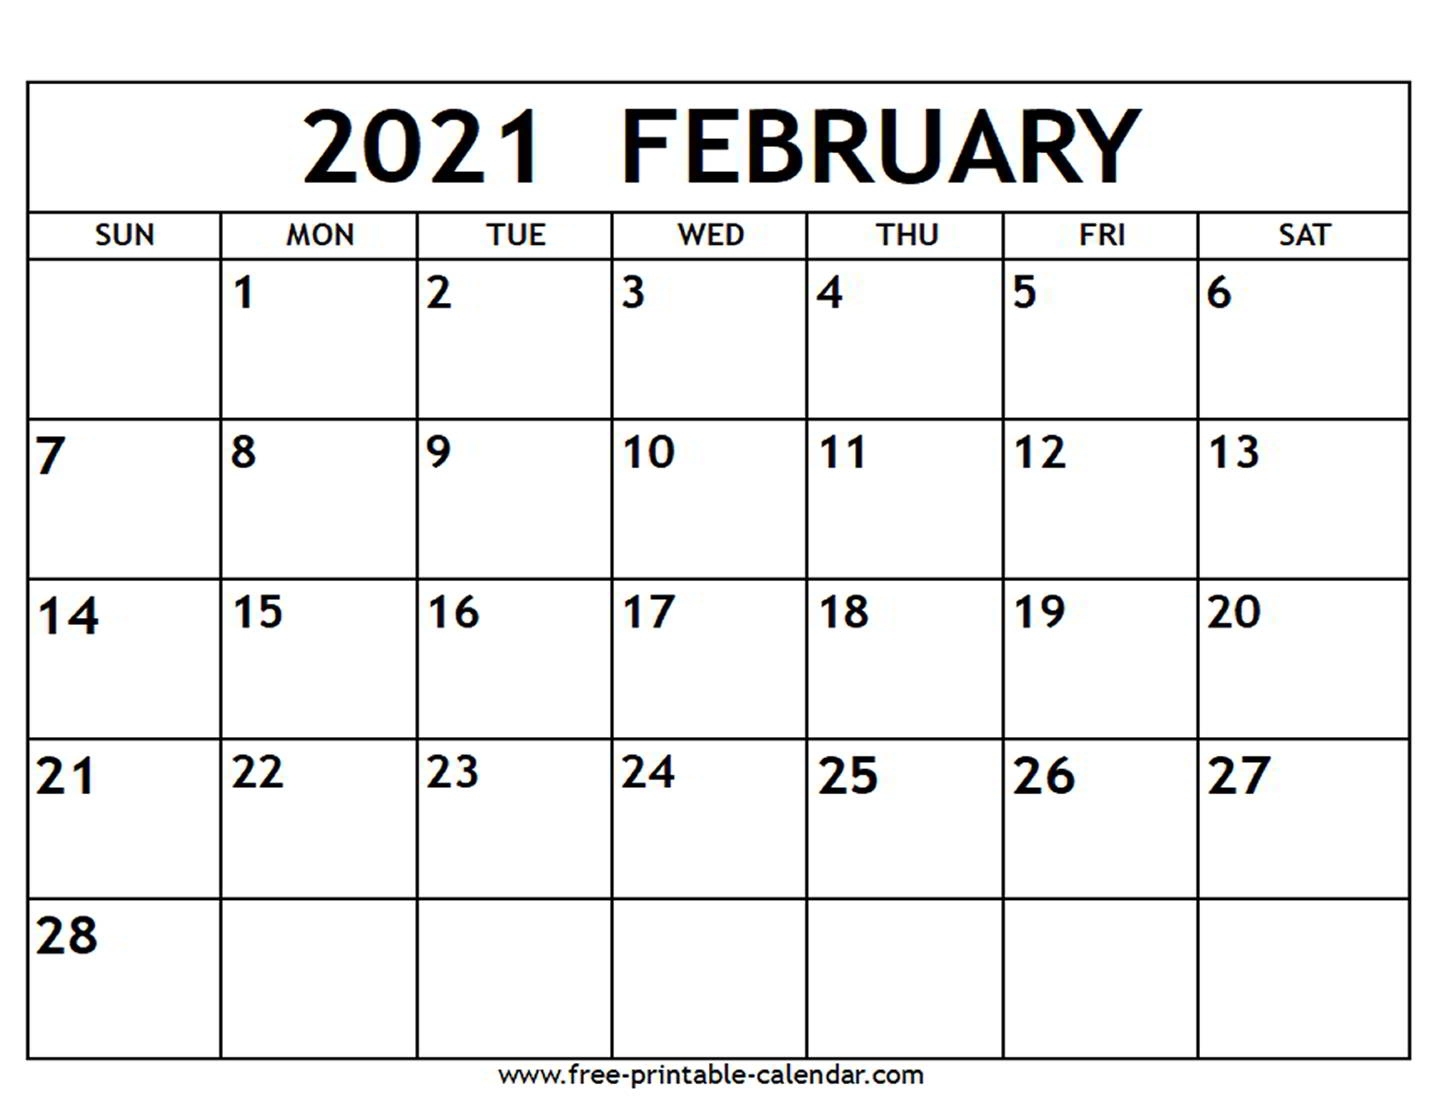 February 2021 Calendar - Free-Printable-Calendar February To June 2021 Calendar